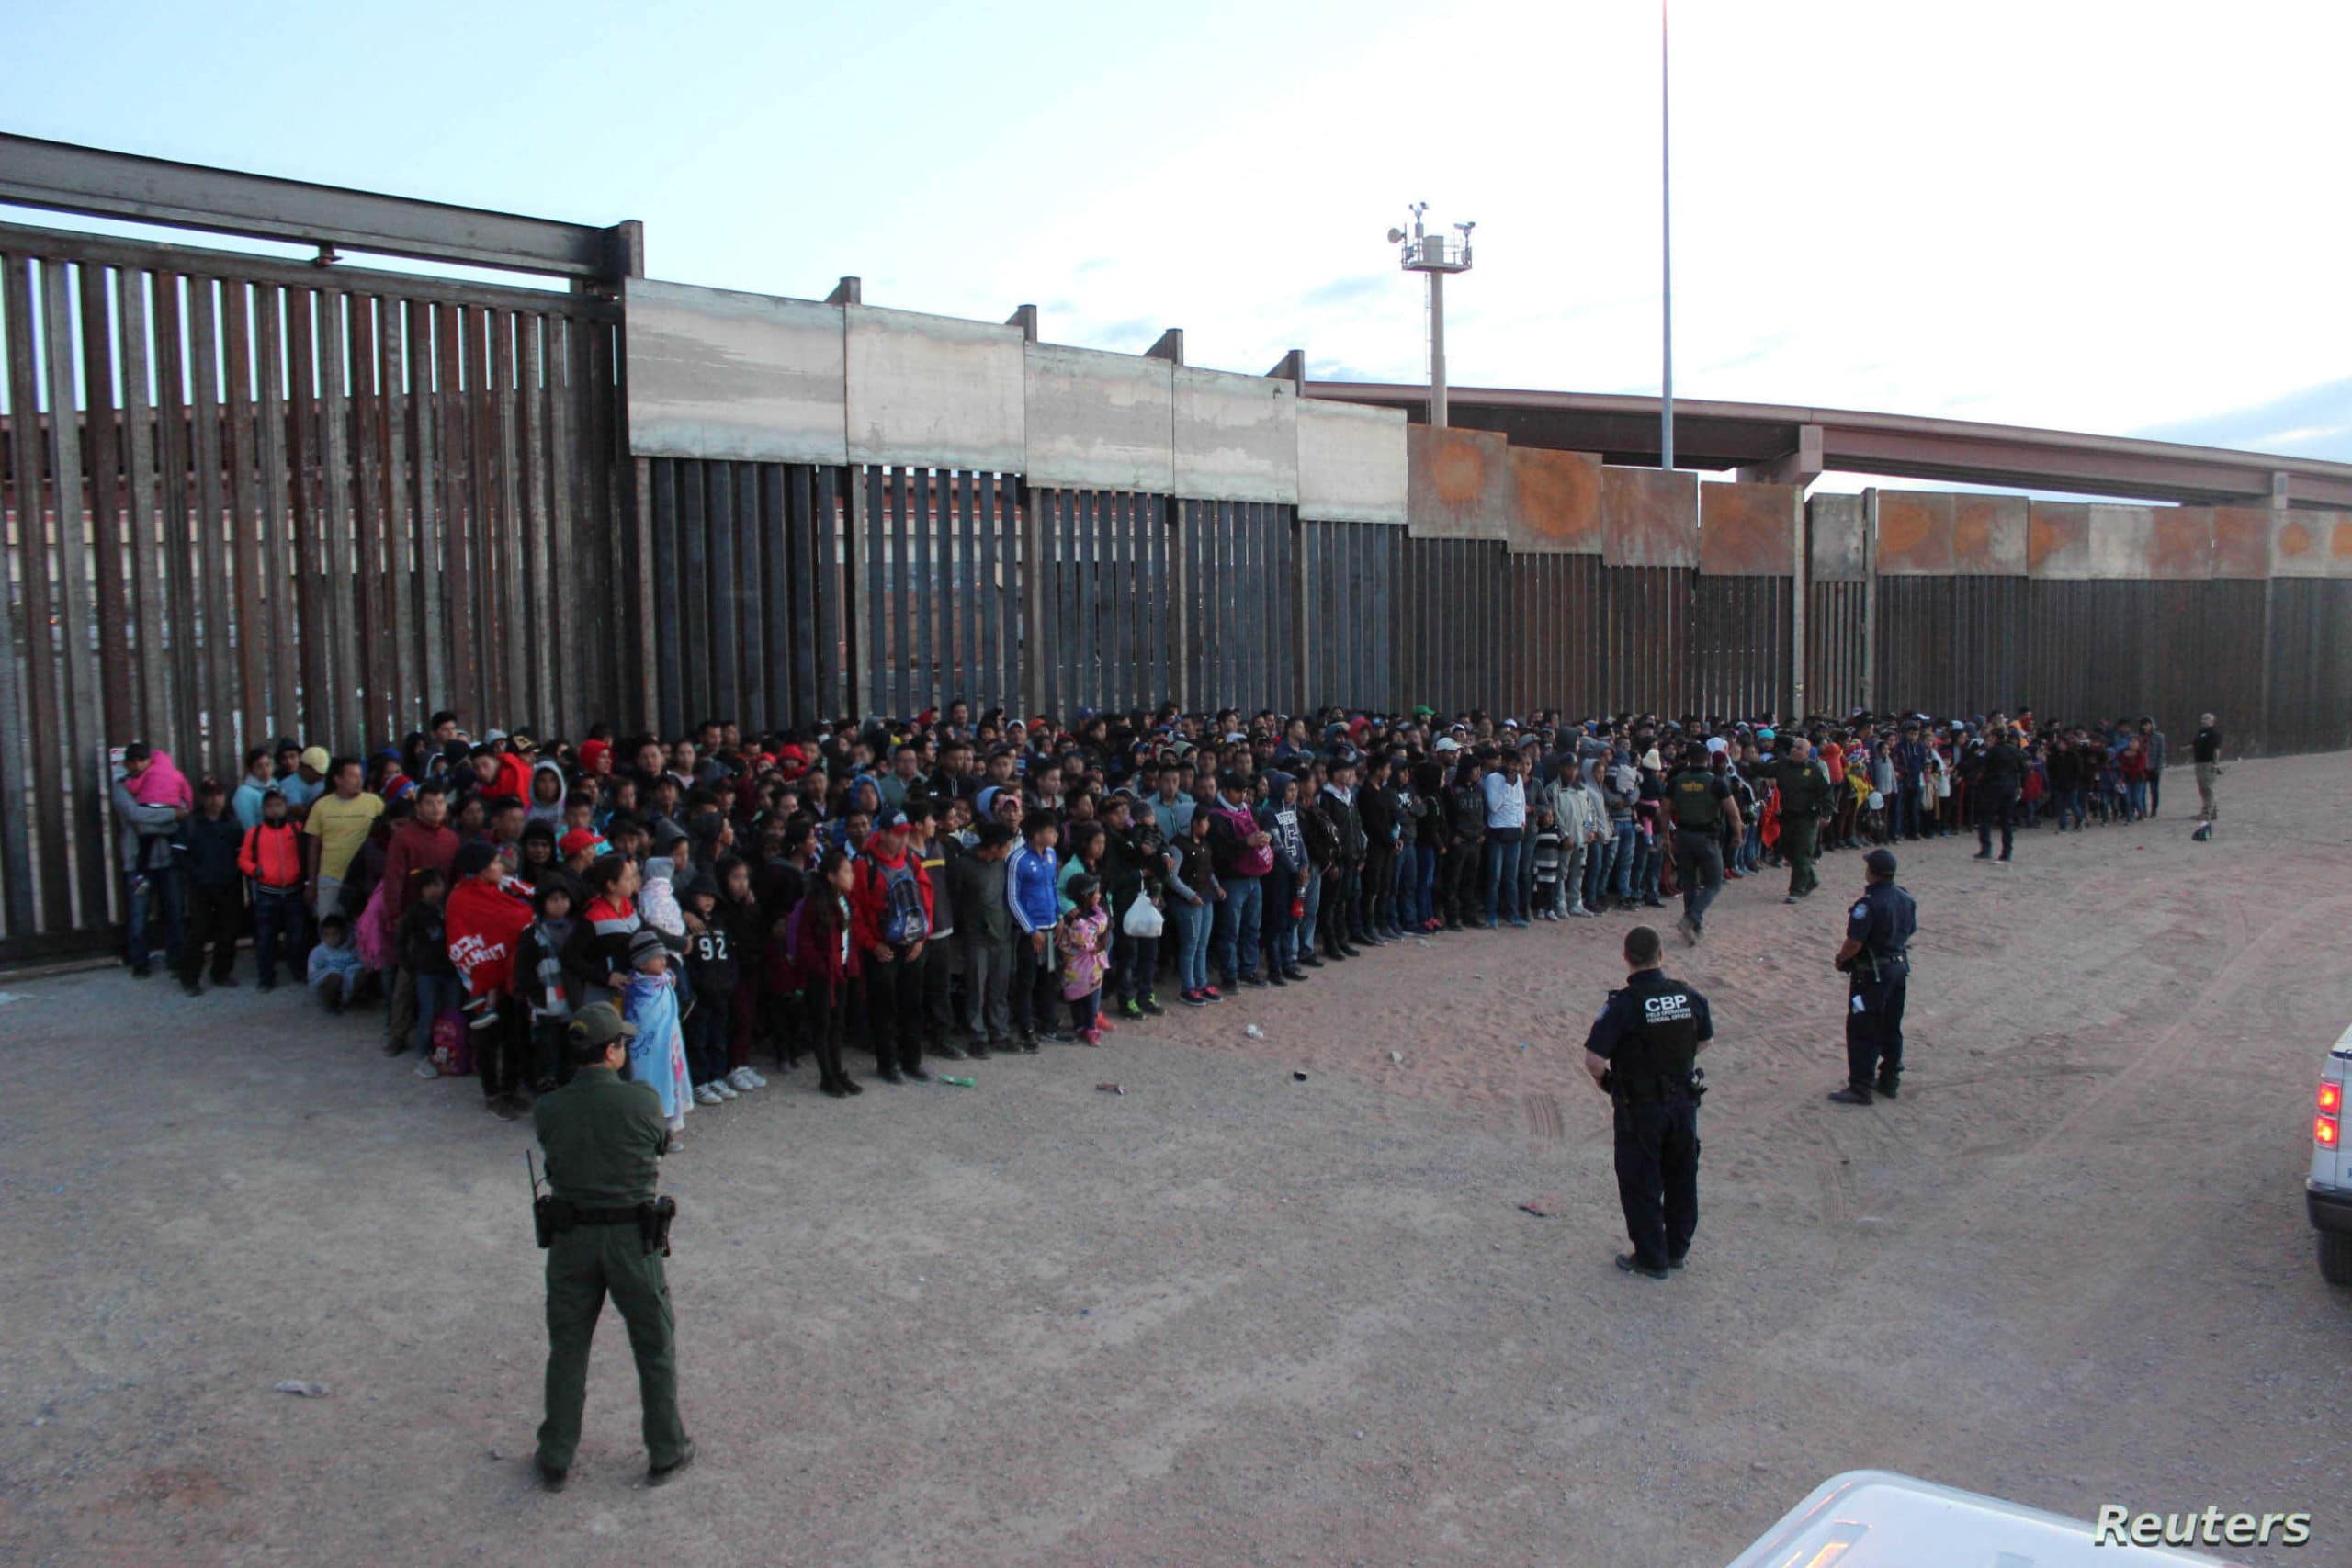 Acusan a Biden de permitir extenso tráfico humano en la frontera con México